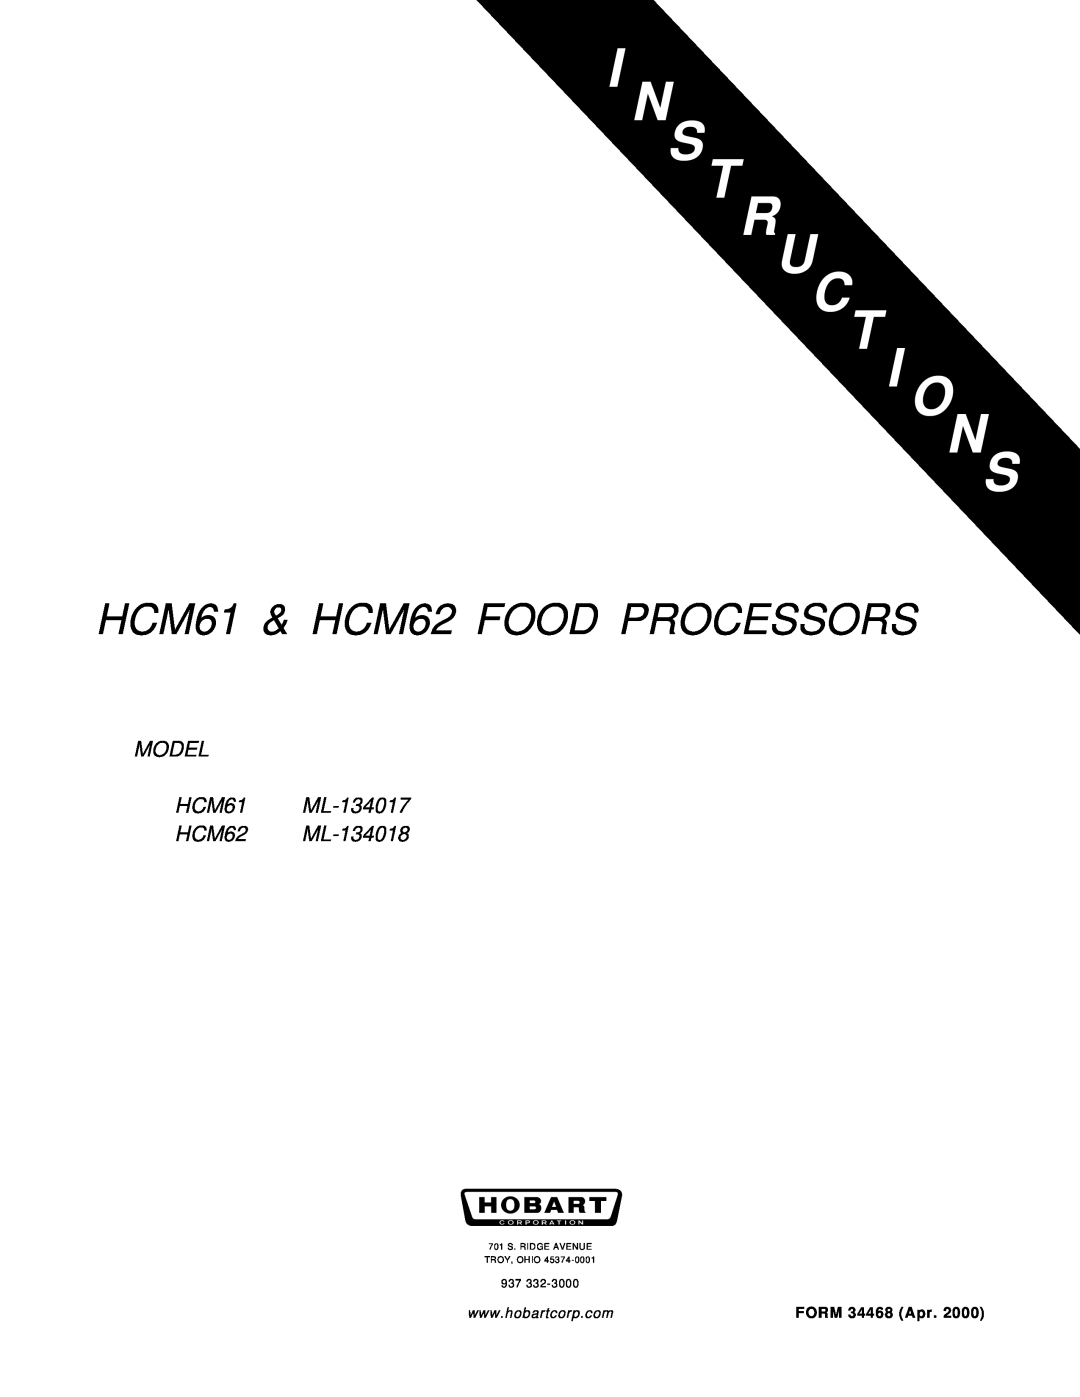 Hobart manual N S Truct I Ons, HCM61 & HCM62 FOOD PROCESSORS, MODEL HCM61 ML-134017 HCM62 ML-134018, FORM 34468 Apr 